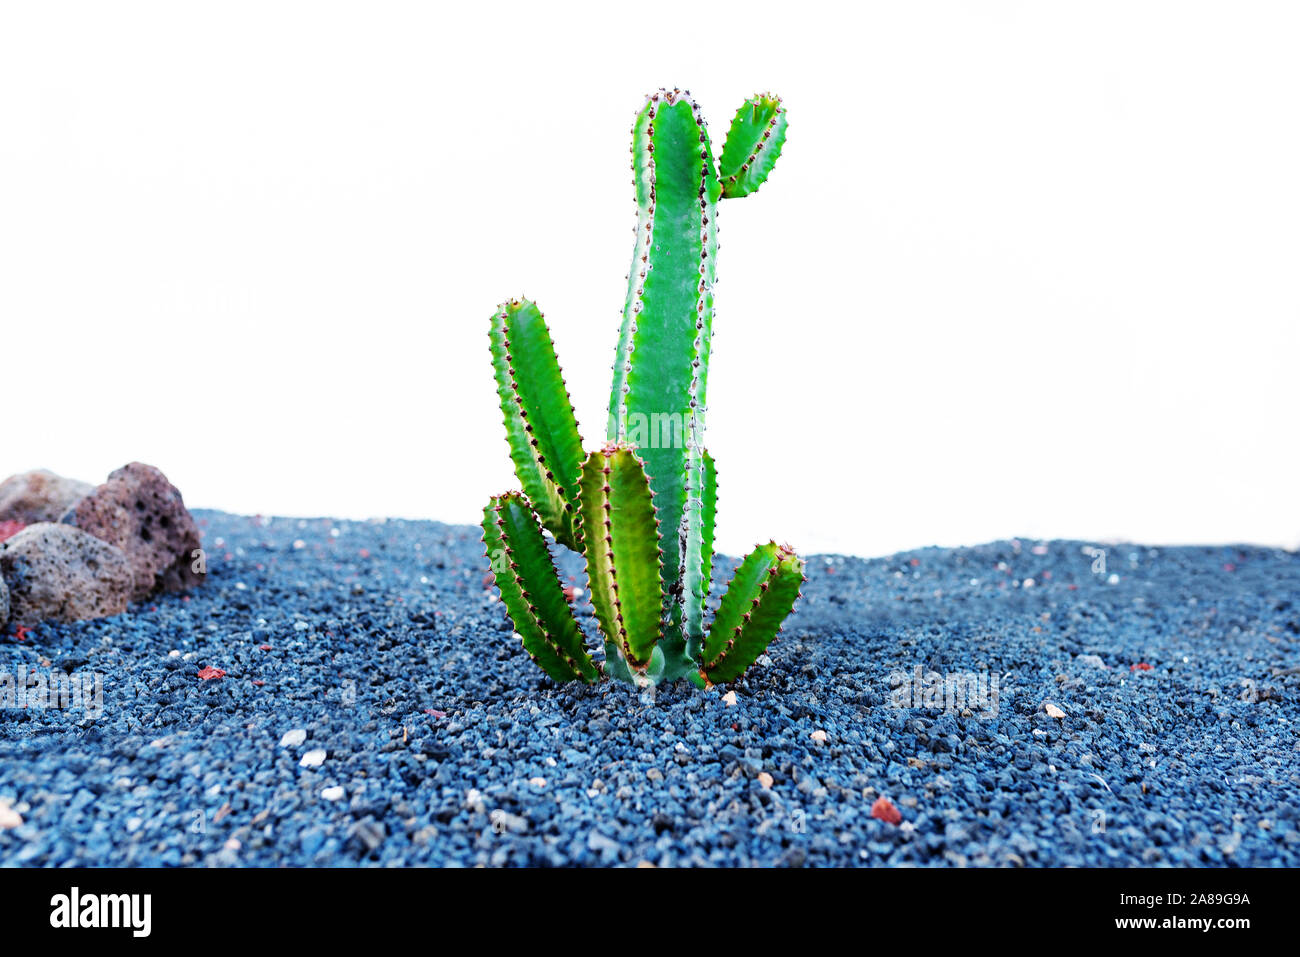 Hohen grünen Kaktus durch Kies gegen weiße Wand Hintergrund wachsenden Stockfoto